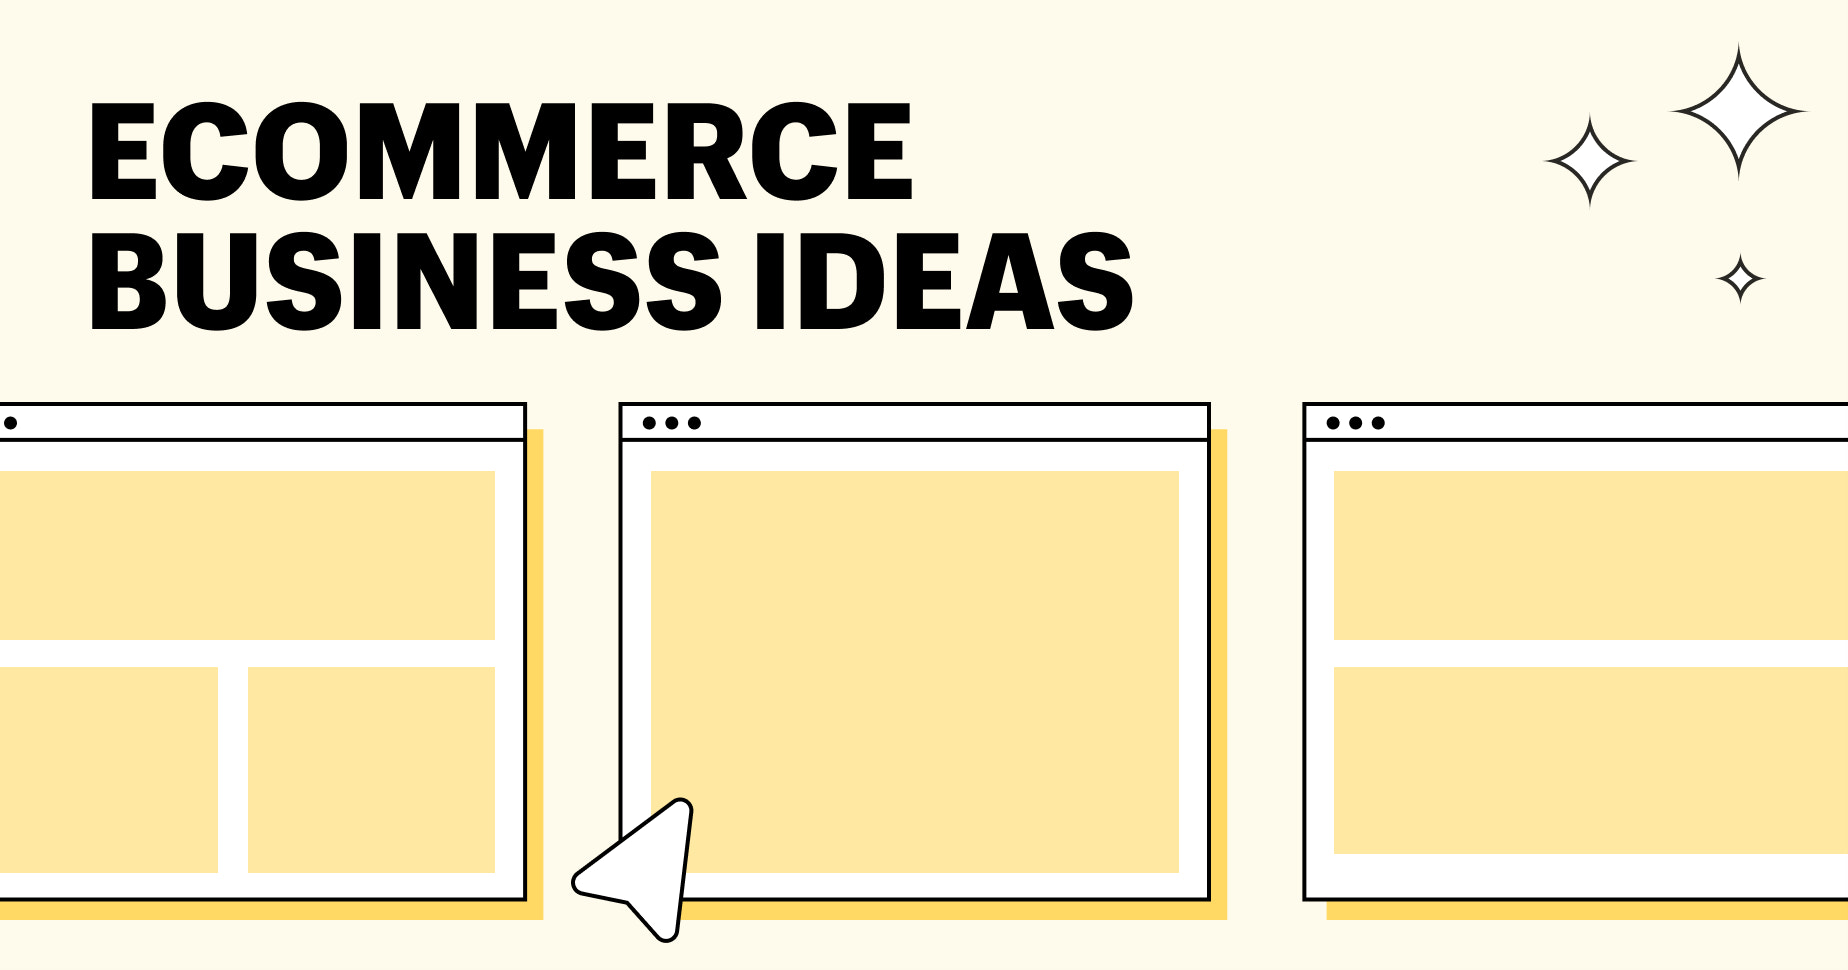 Ecommerce Business Ideas: Đang băn khoăn về ý tưởng kinh doanh trên môi trường thương mại điện tử? Hãy cùng khám phá danh sách các ý tưởng kinh doanh thú vị và tiềm năng này để tìm ra cách khởi nghiệp thành công của riêng mình nhé!